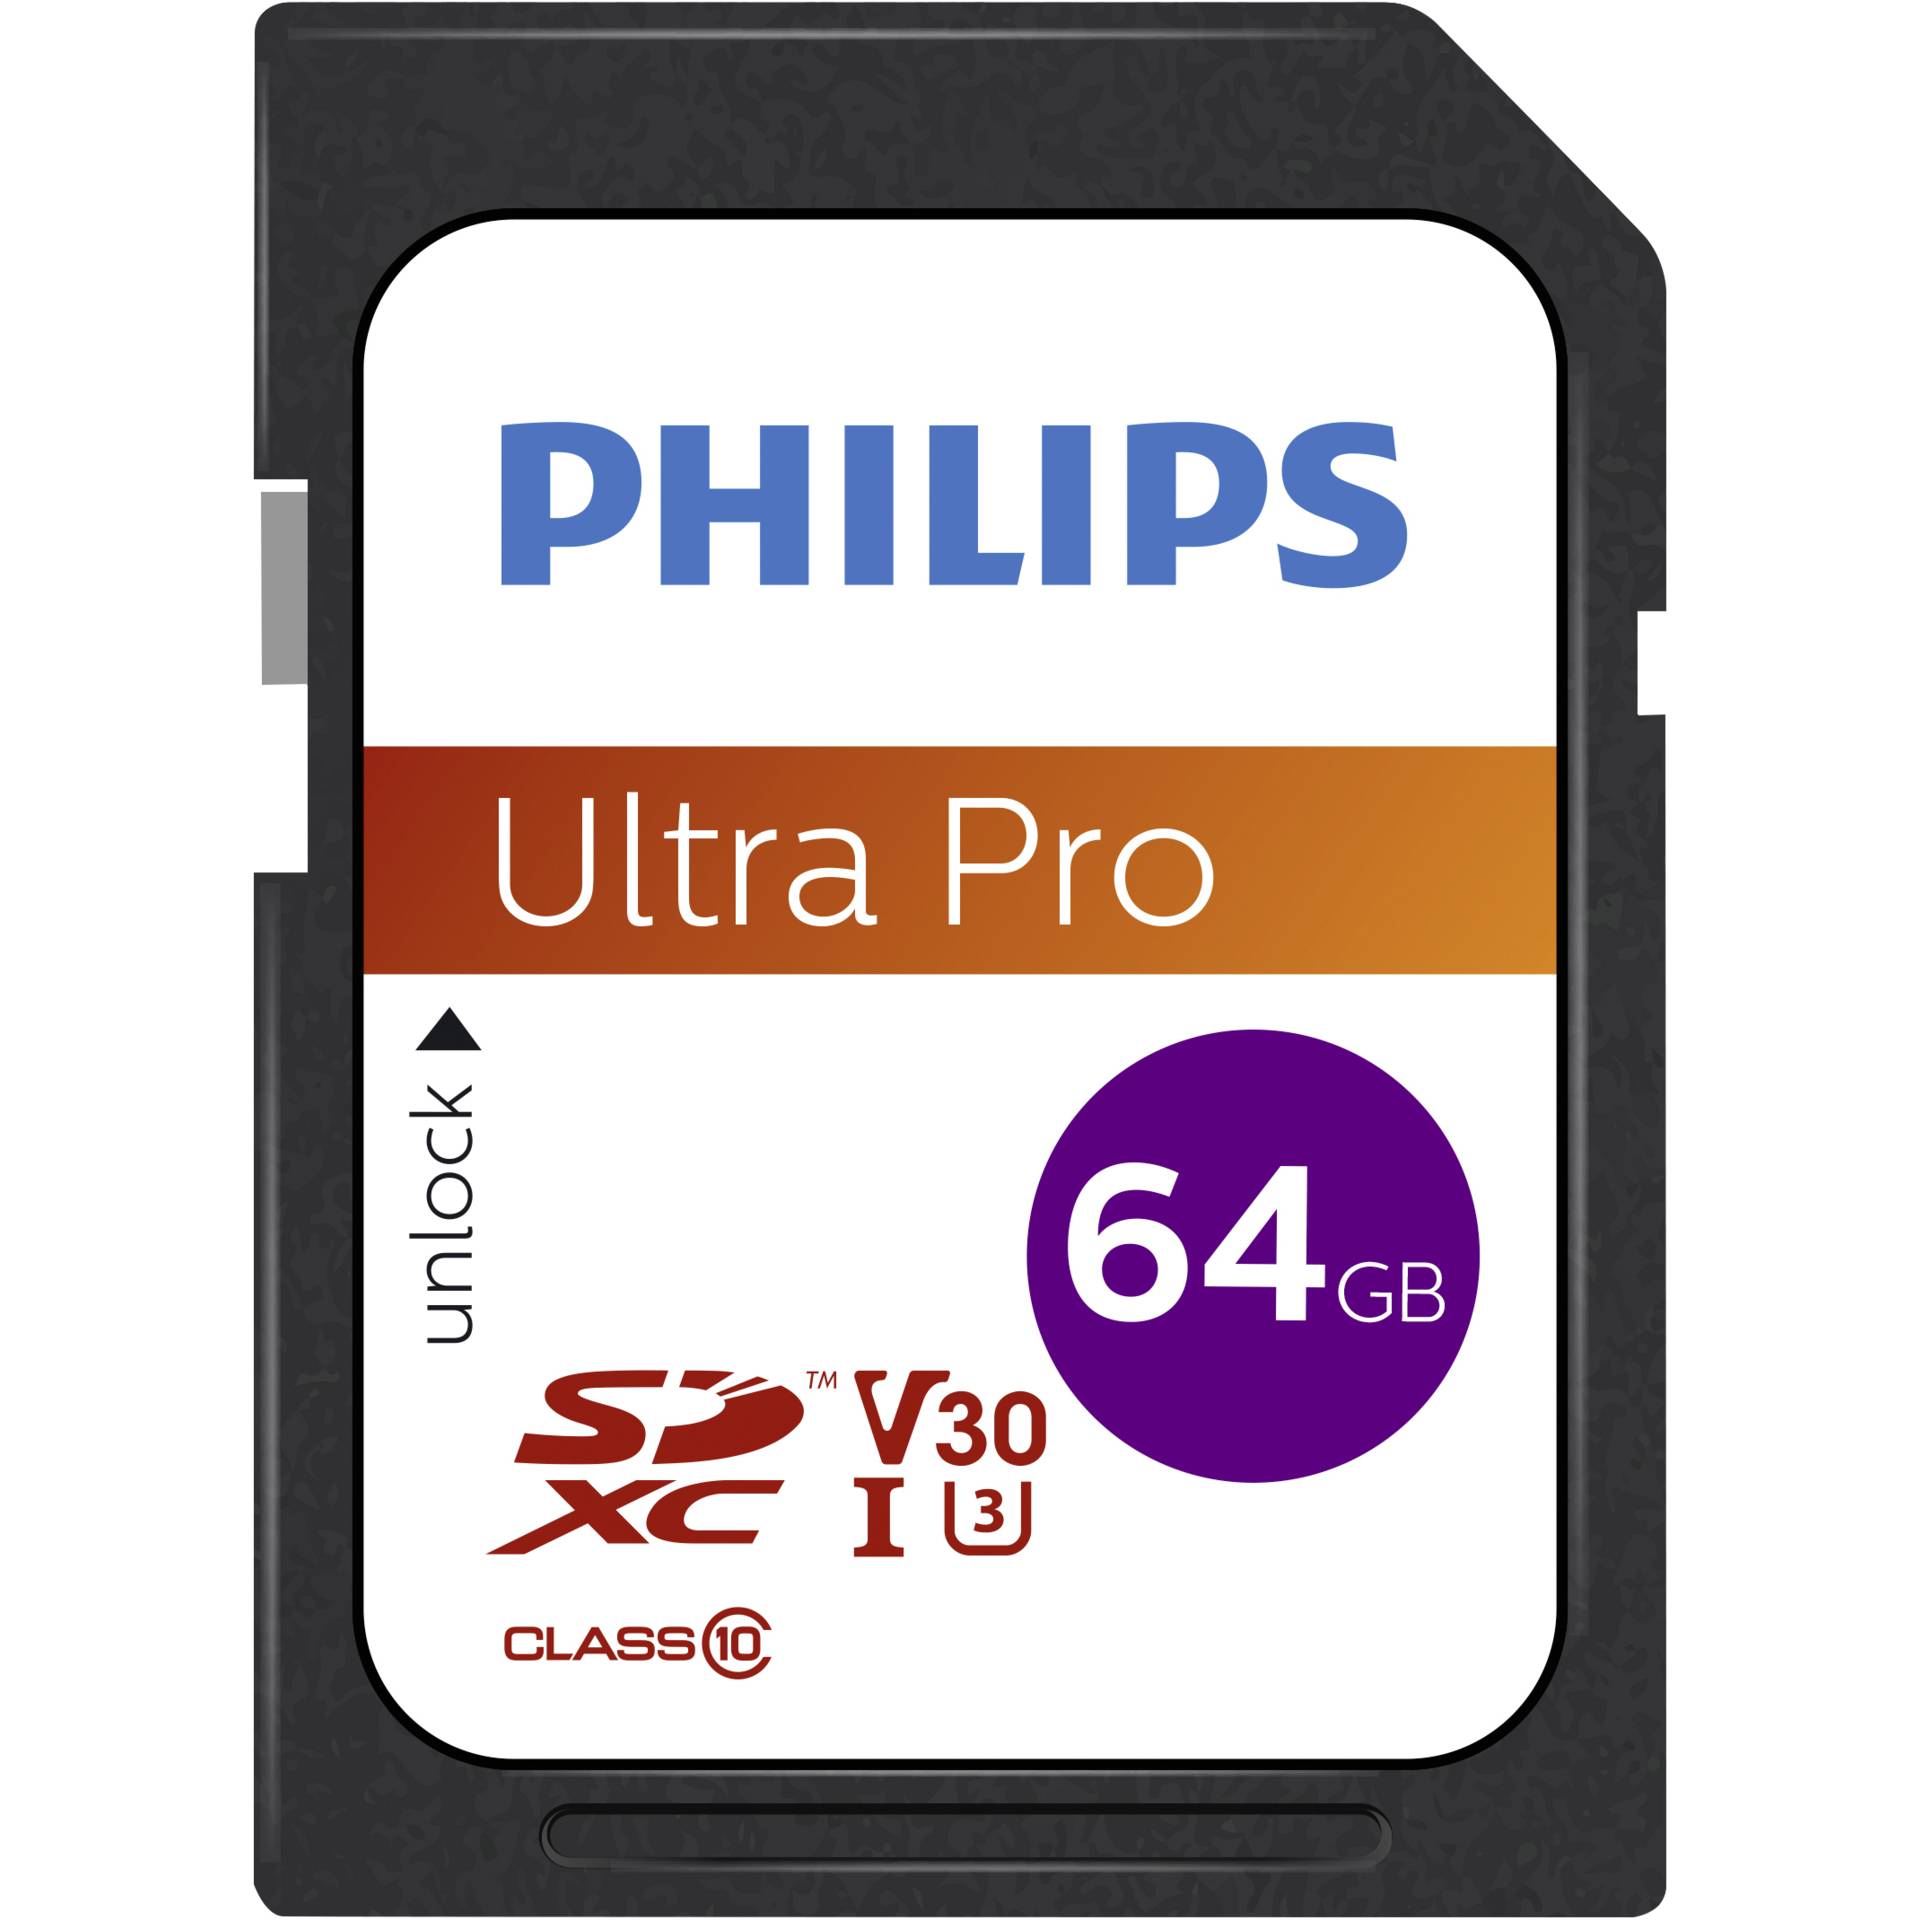 Philips SDXC Card           64GB Class 10 UHS-I U3 V30 A1